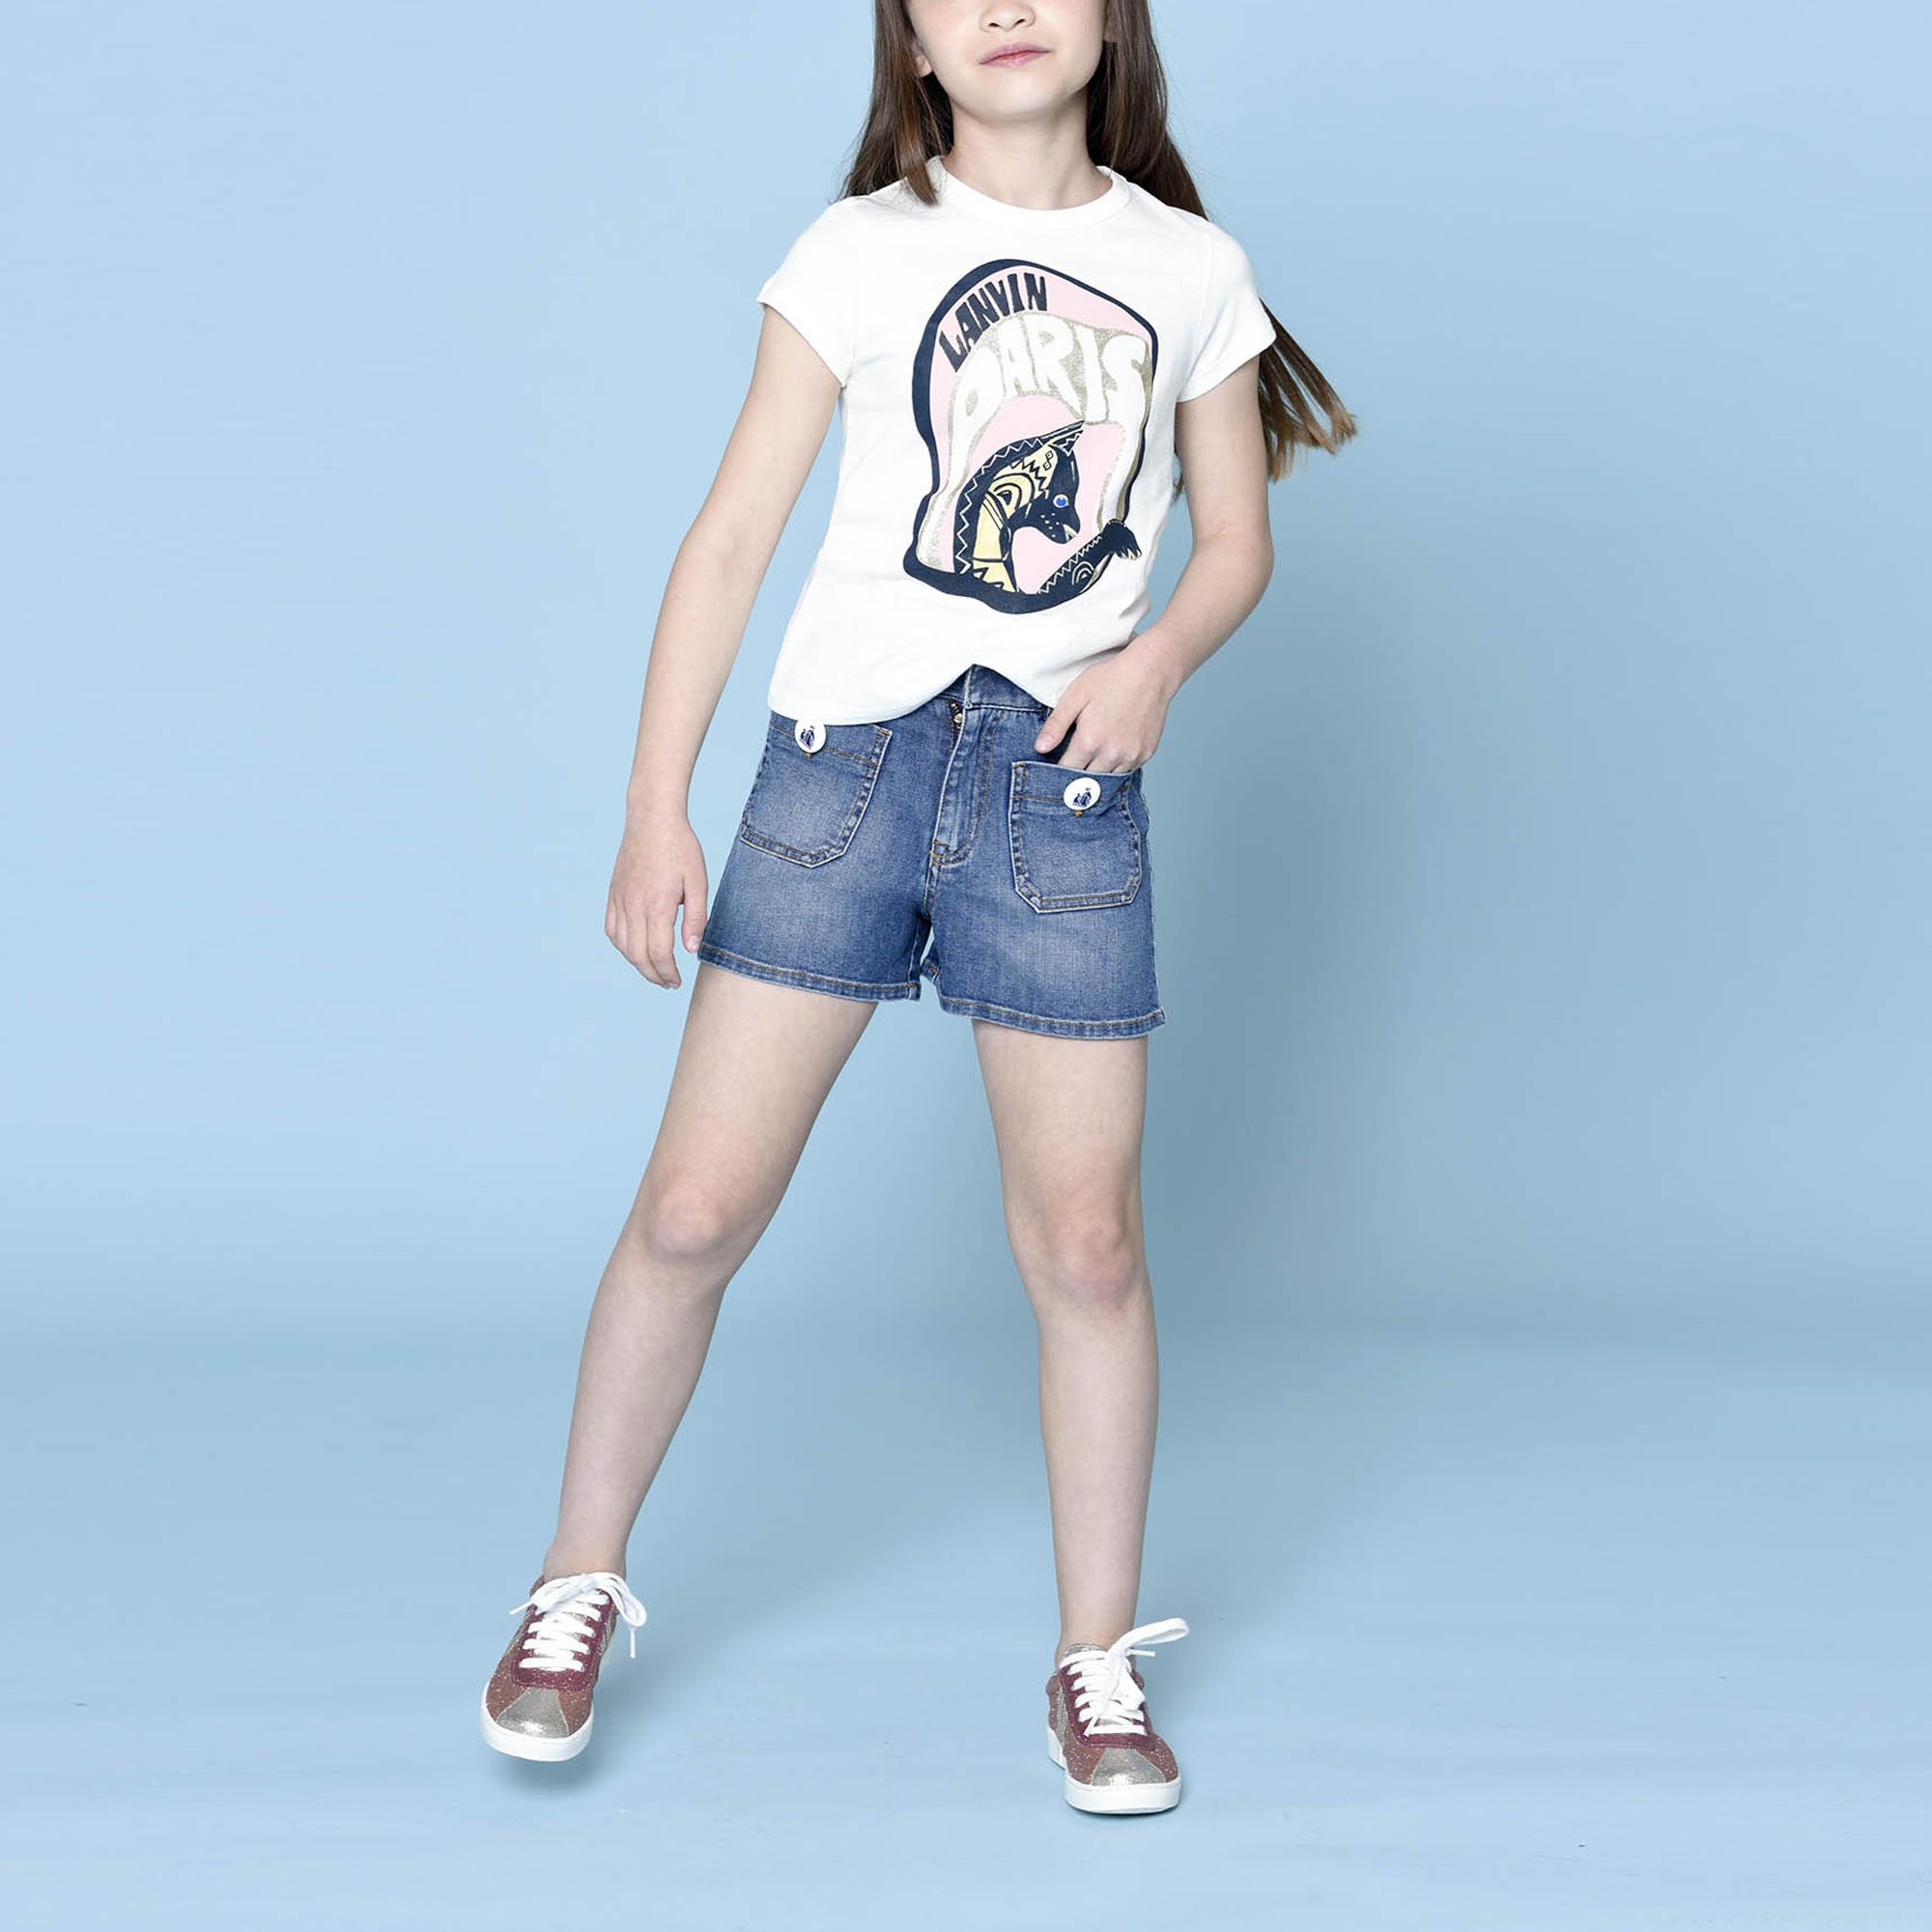 Short-sleeved t-shirt LANVIN for GIRL